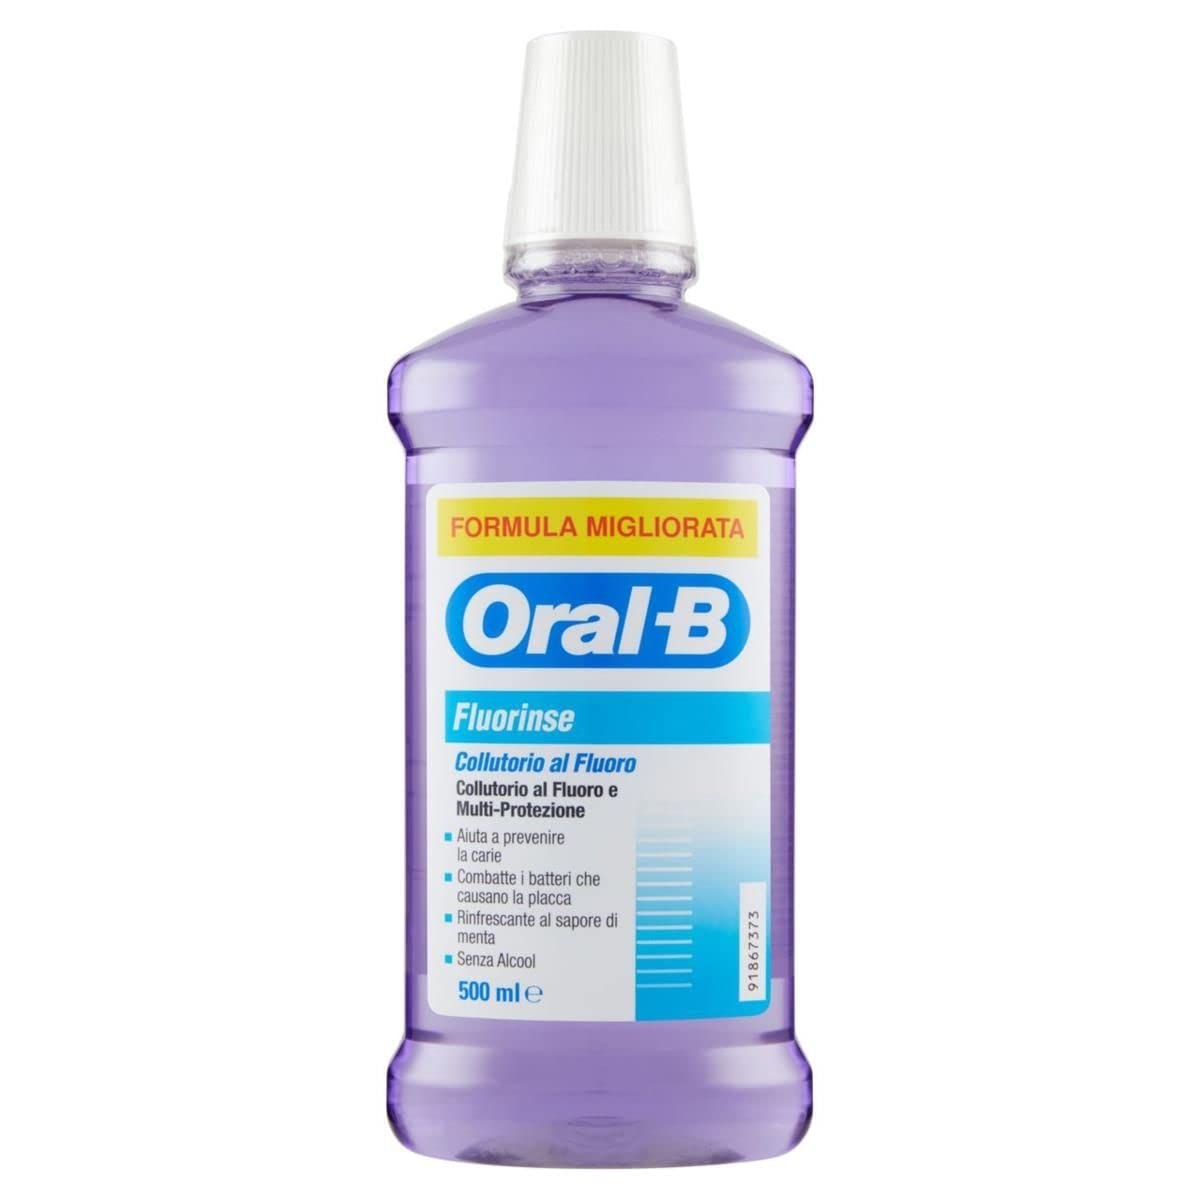 Oral-b colluttorio fluorinse ml.500